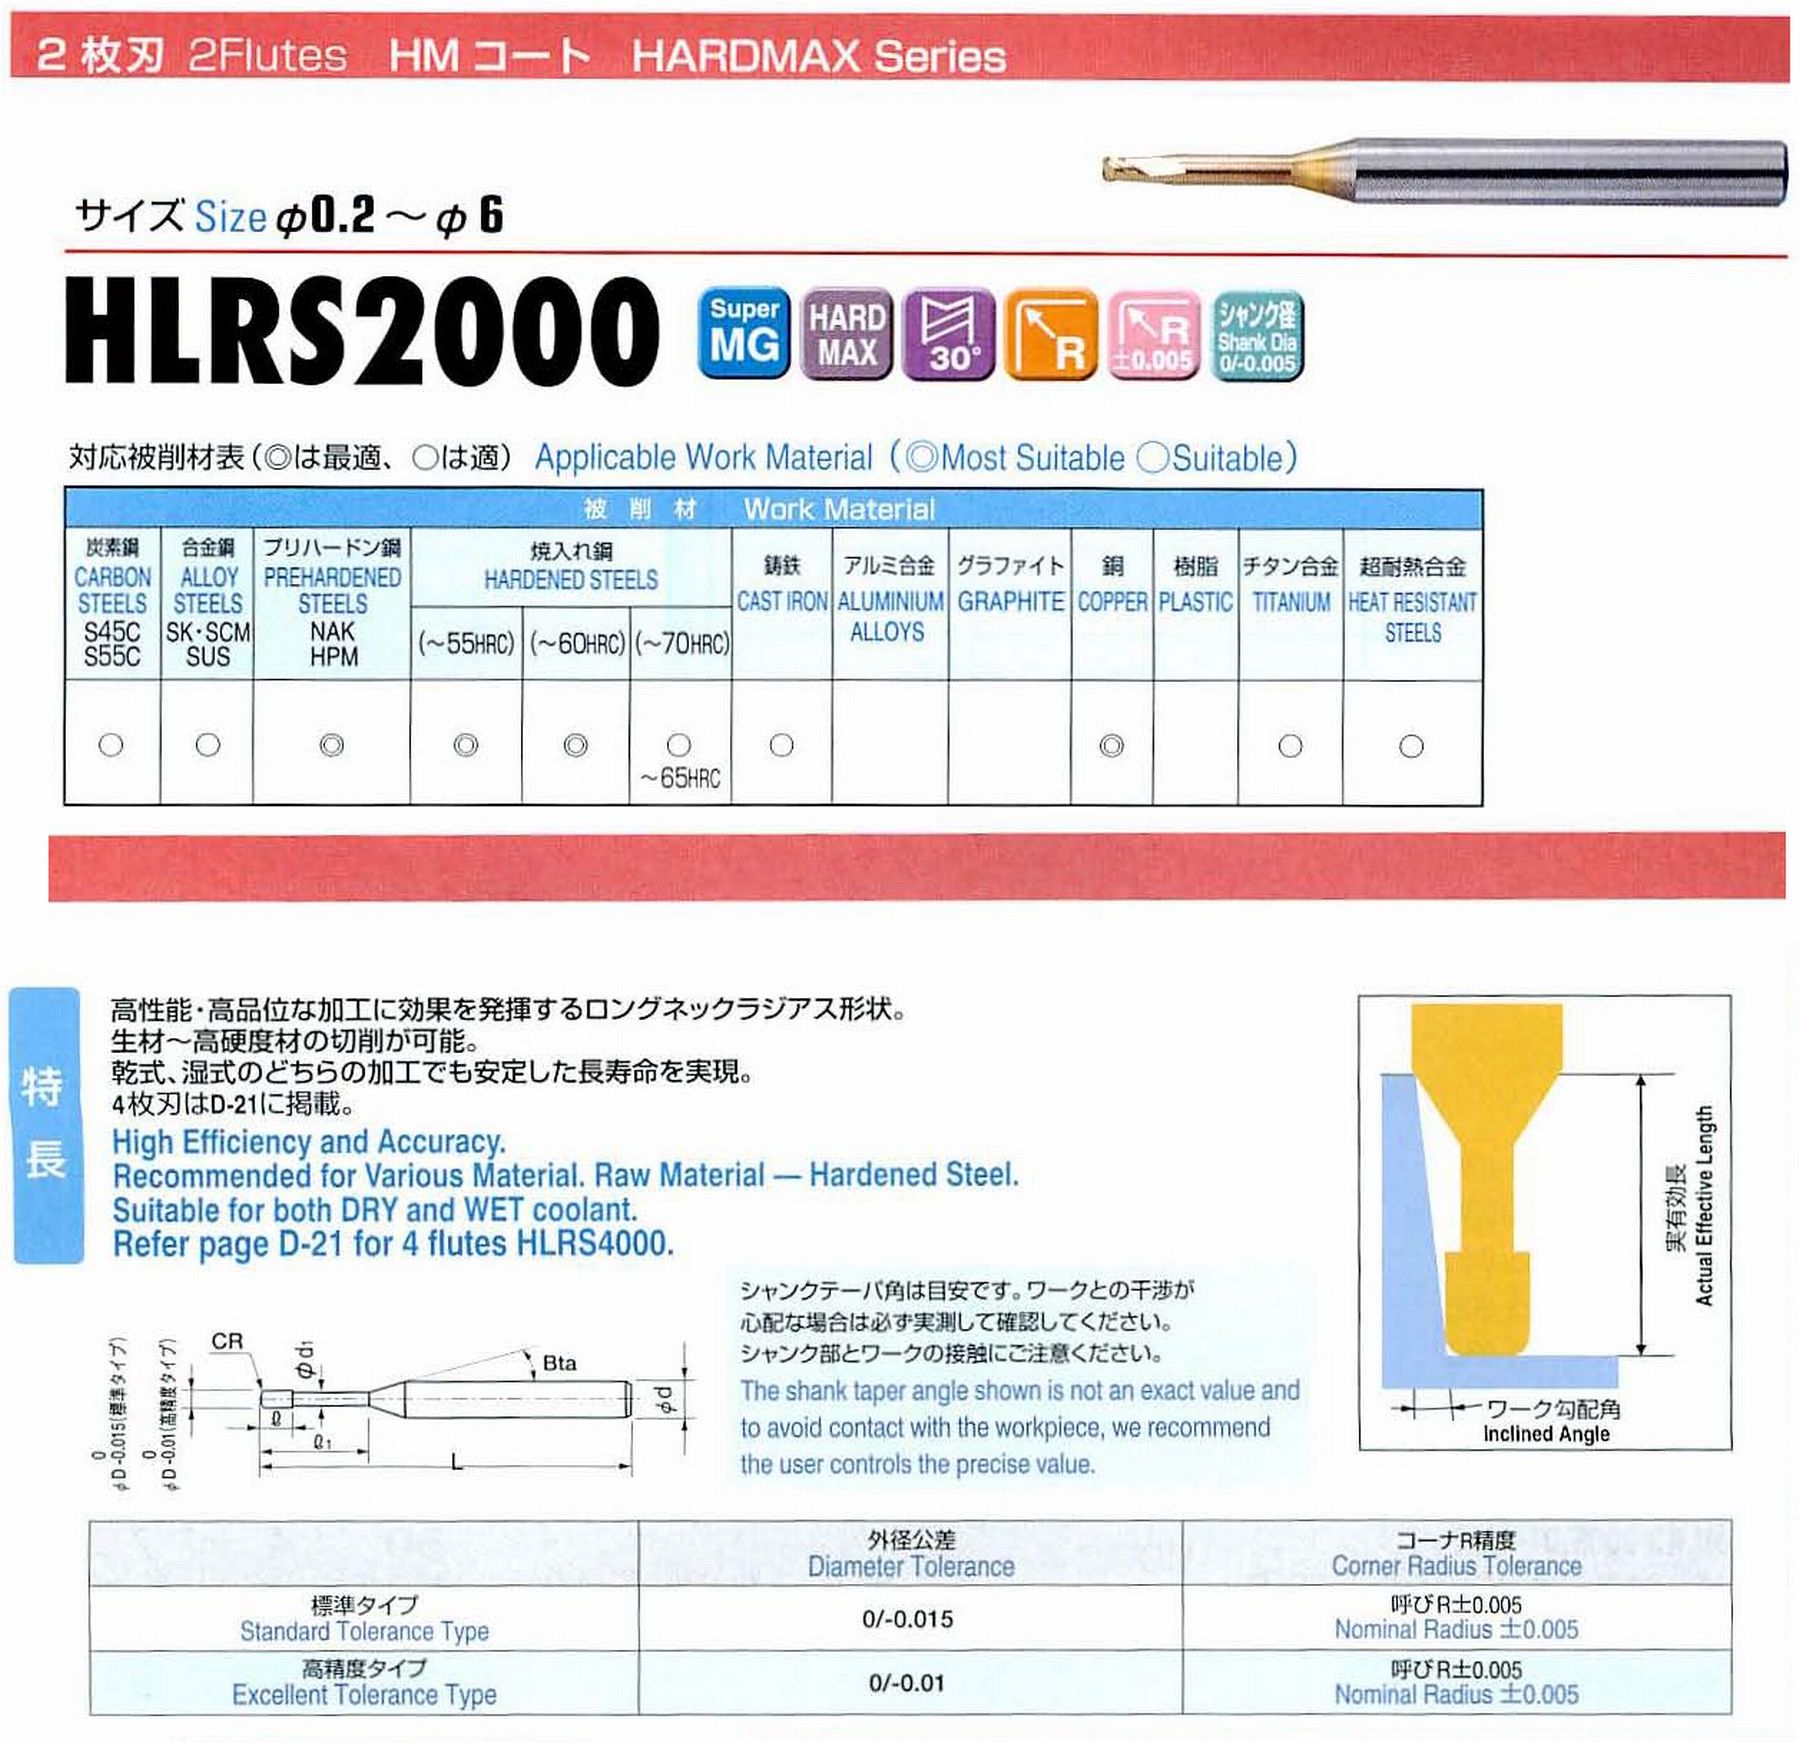 ユニオンツール 2枚刃 HLRS2012-02-200 外径1.2 コーナ半径R0.2 有効長20 刃長1.2 首径1.14 シャンクテーパ角16° 全長60 シャンク径4